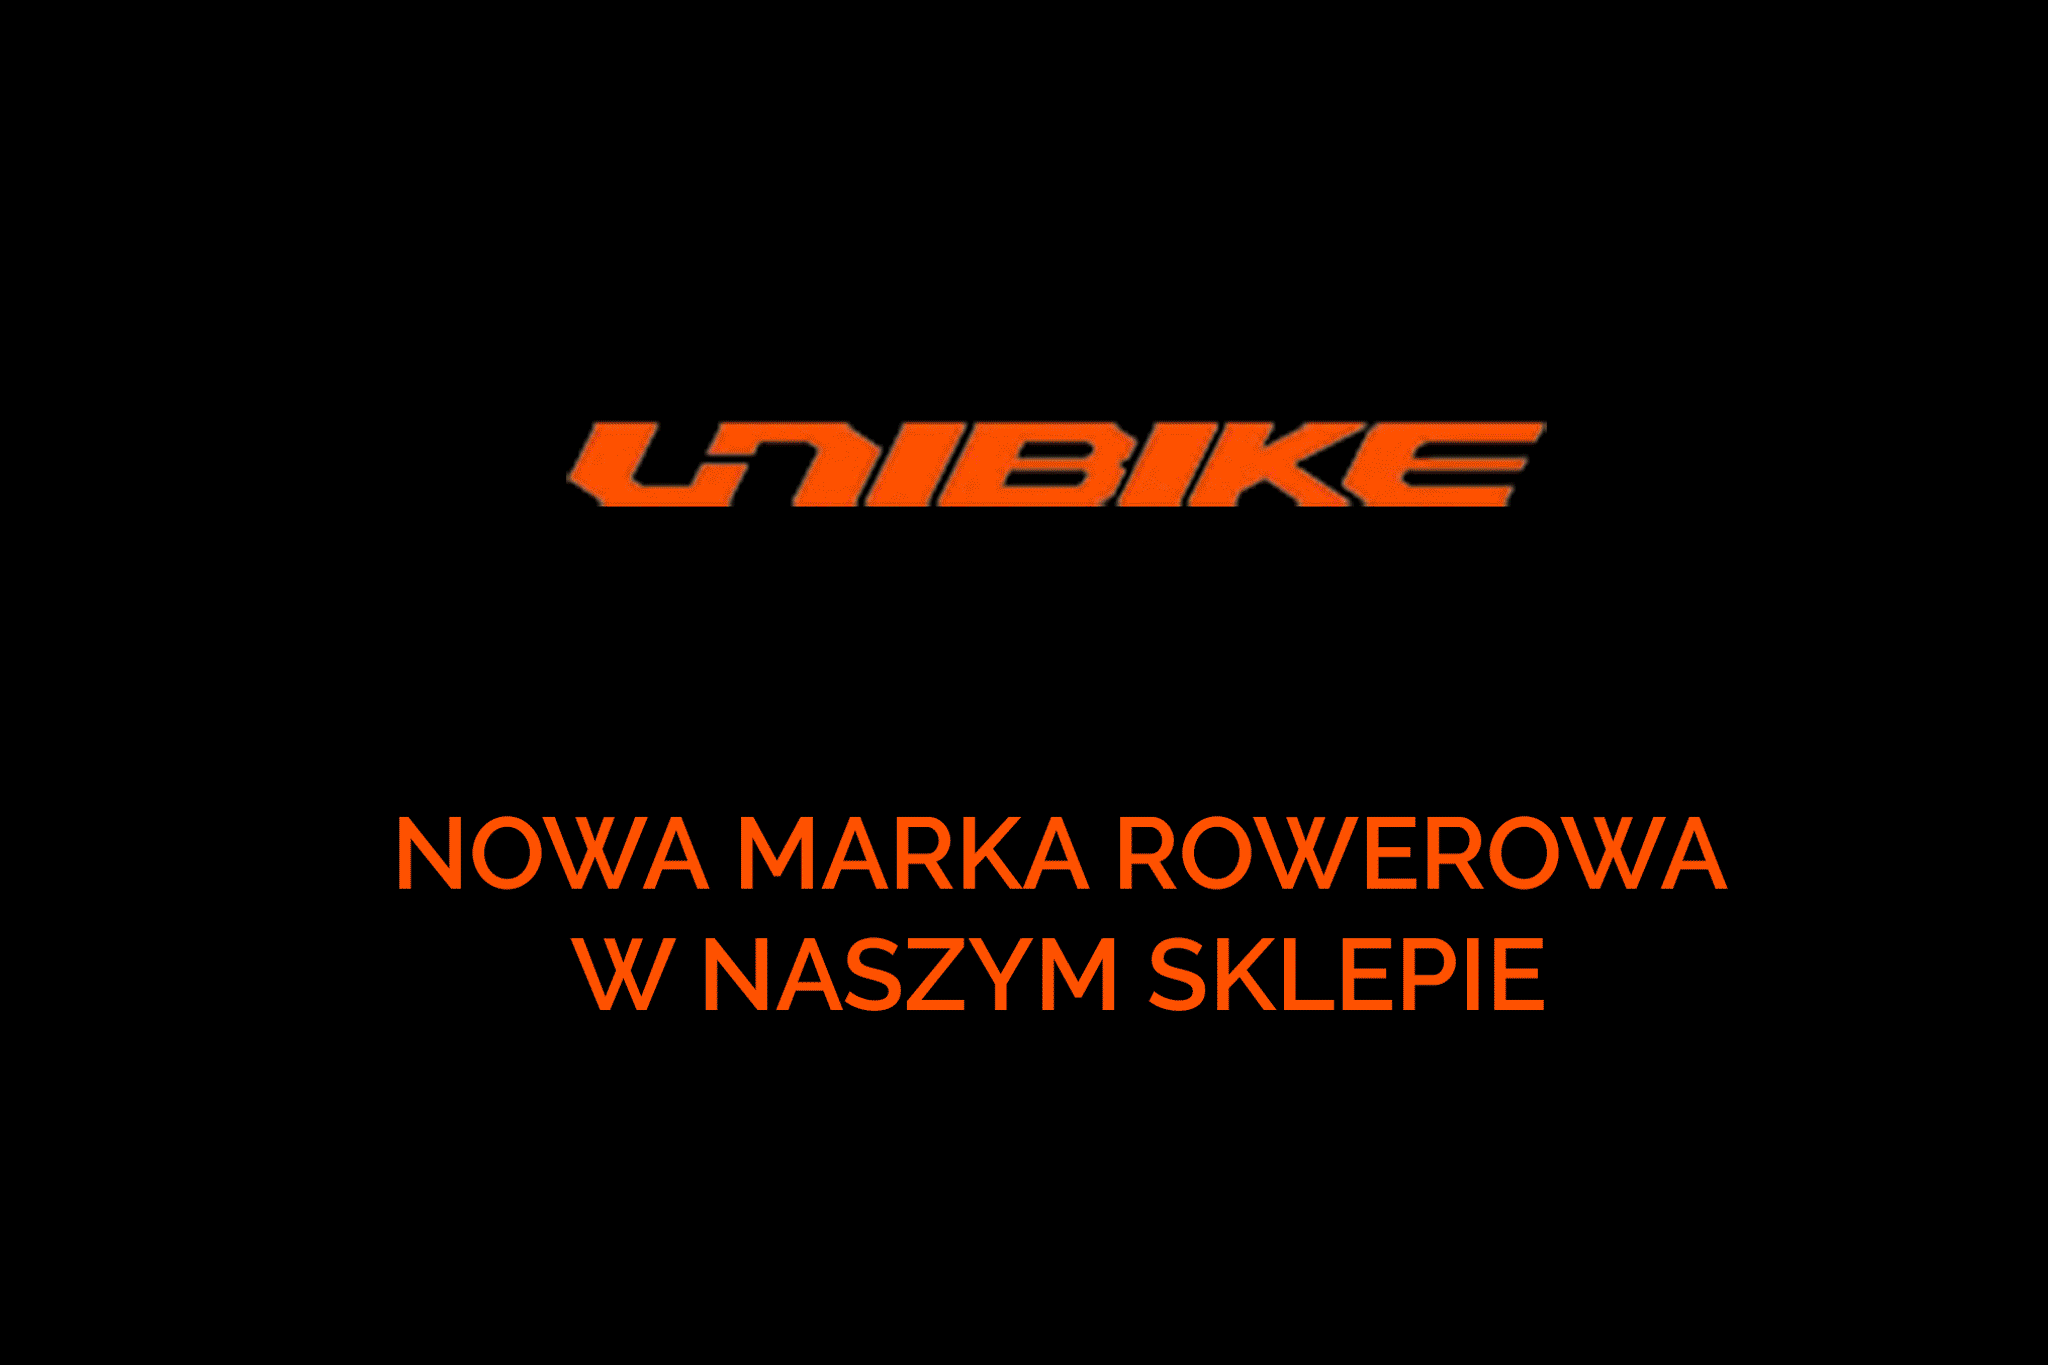 rowery Unibike